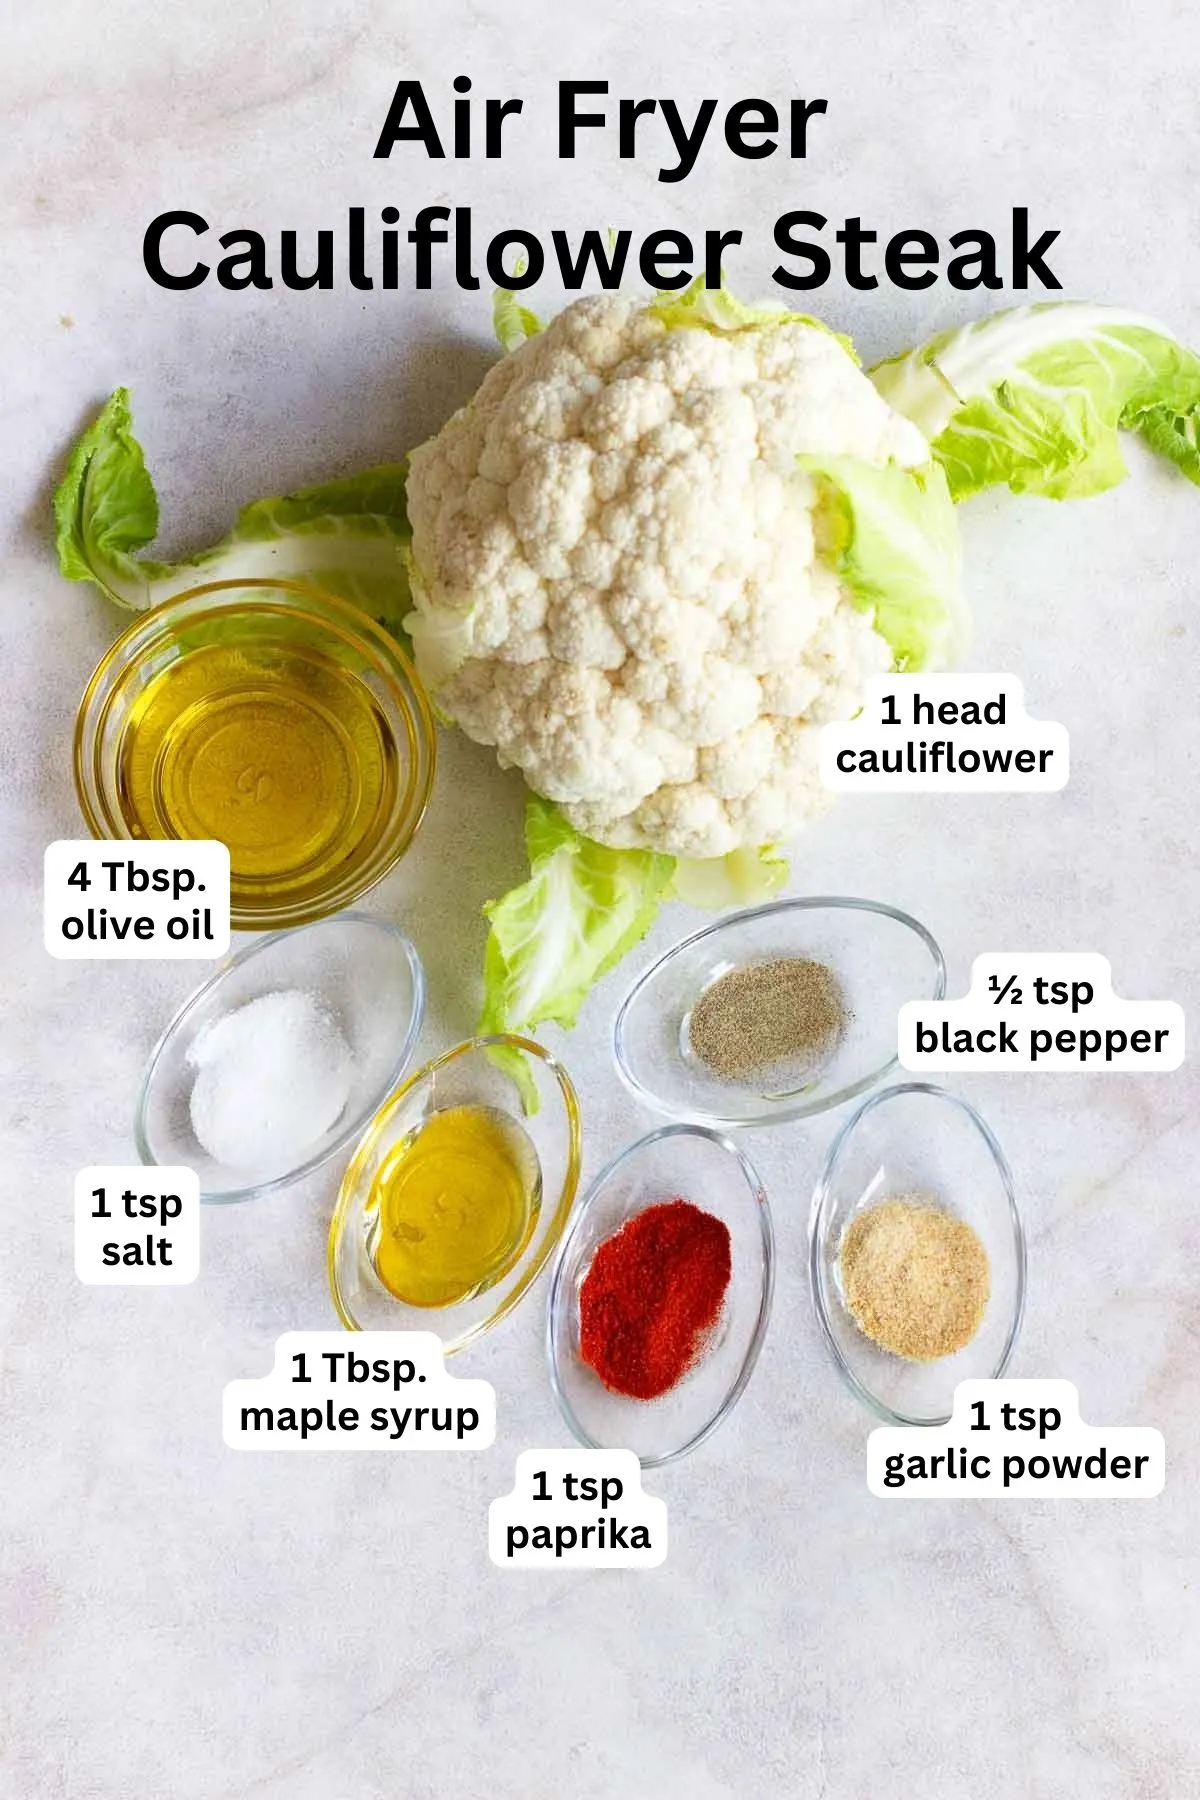 Ingredients to make air fryer cauliflower steak